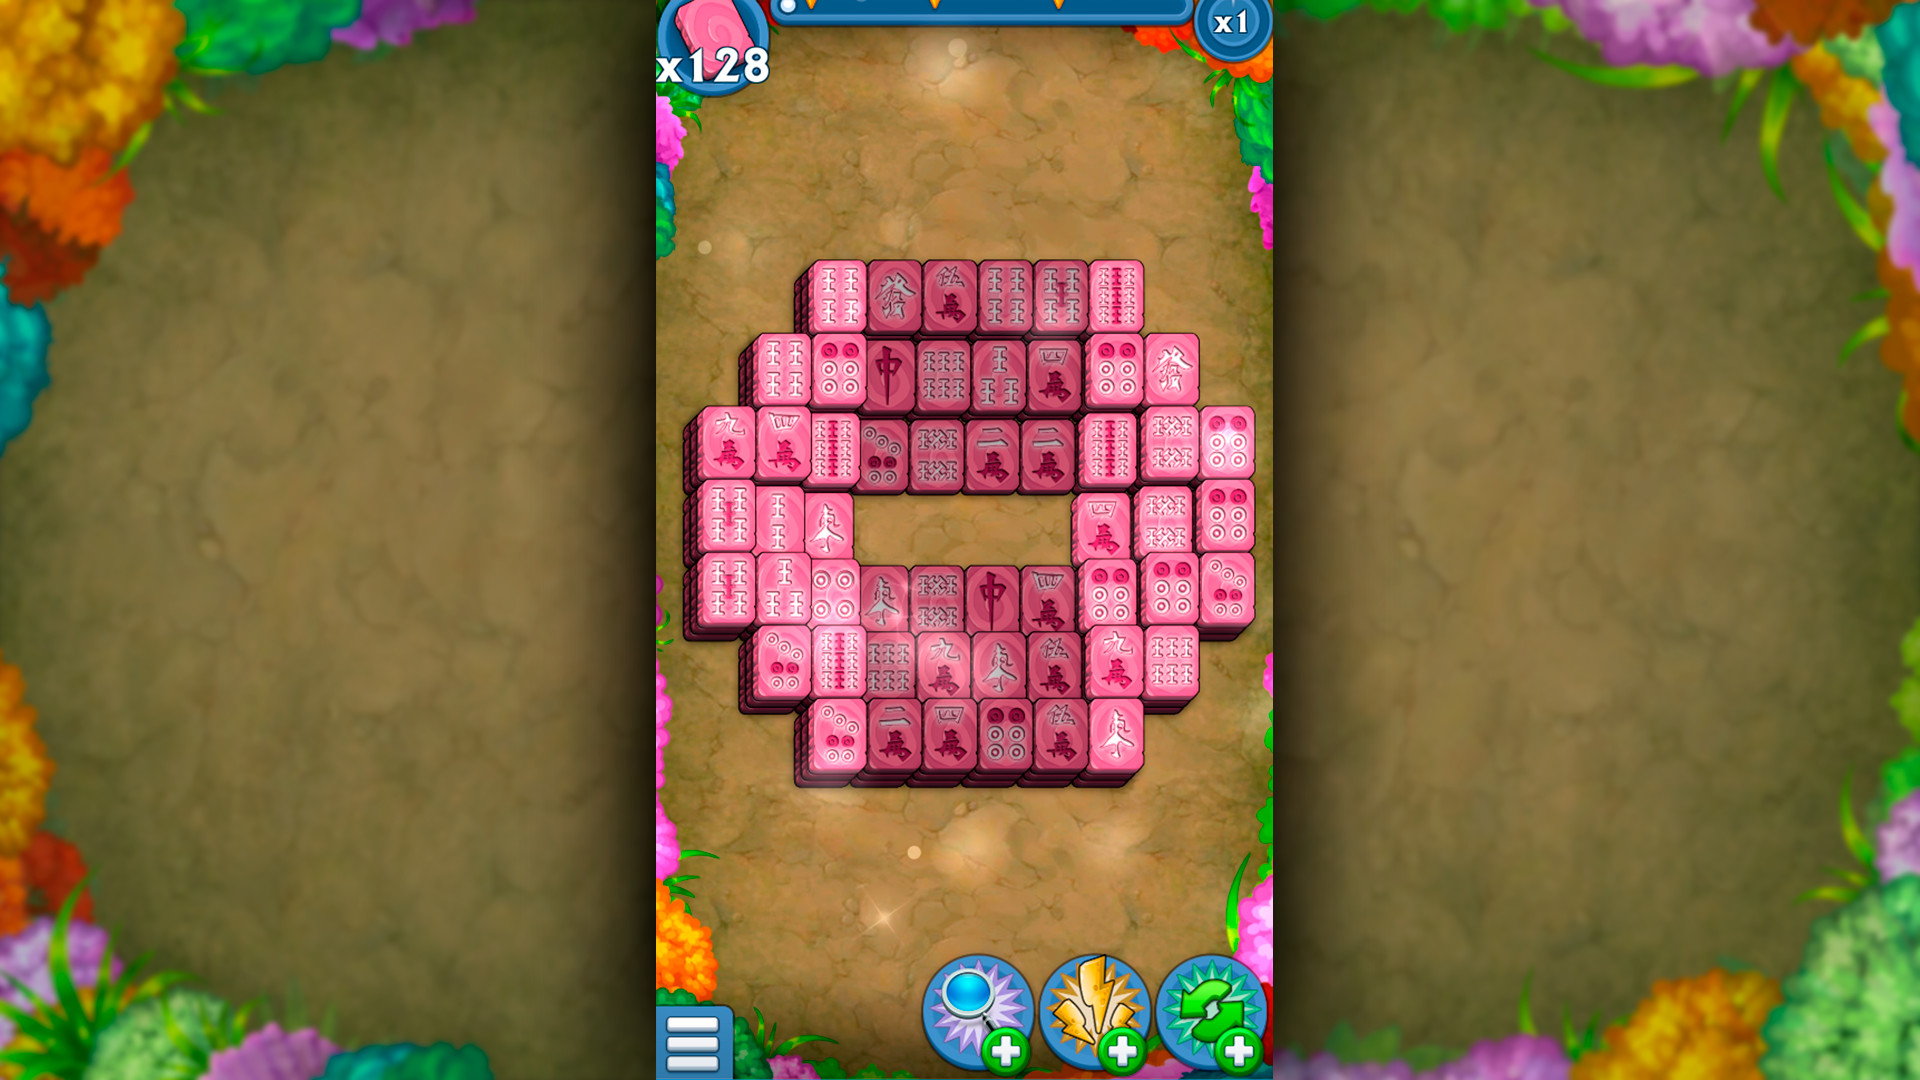 Mahjong: Magic Chips Free Download